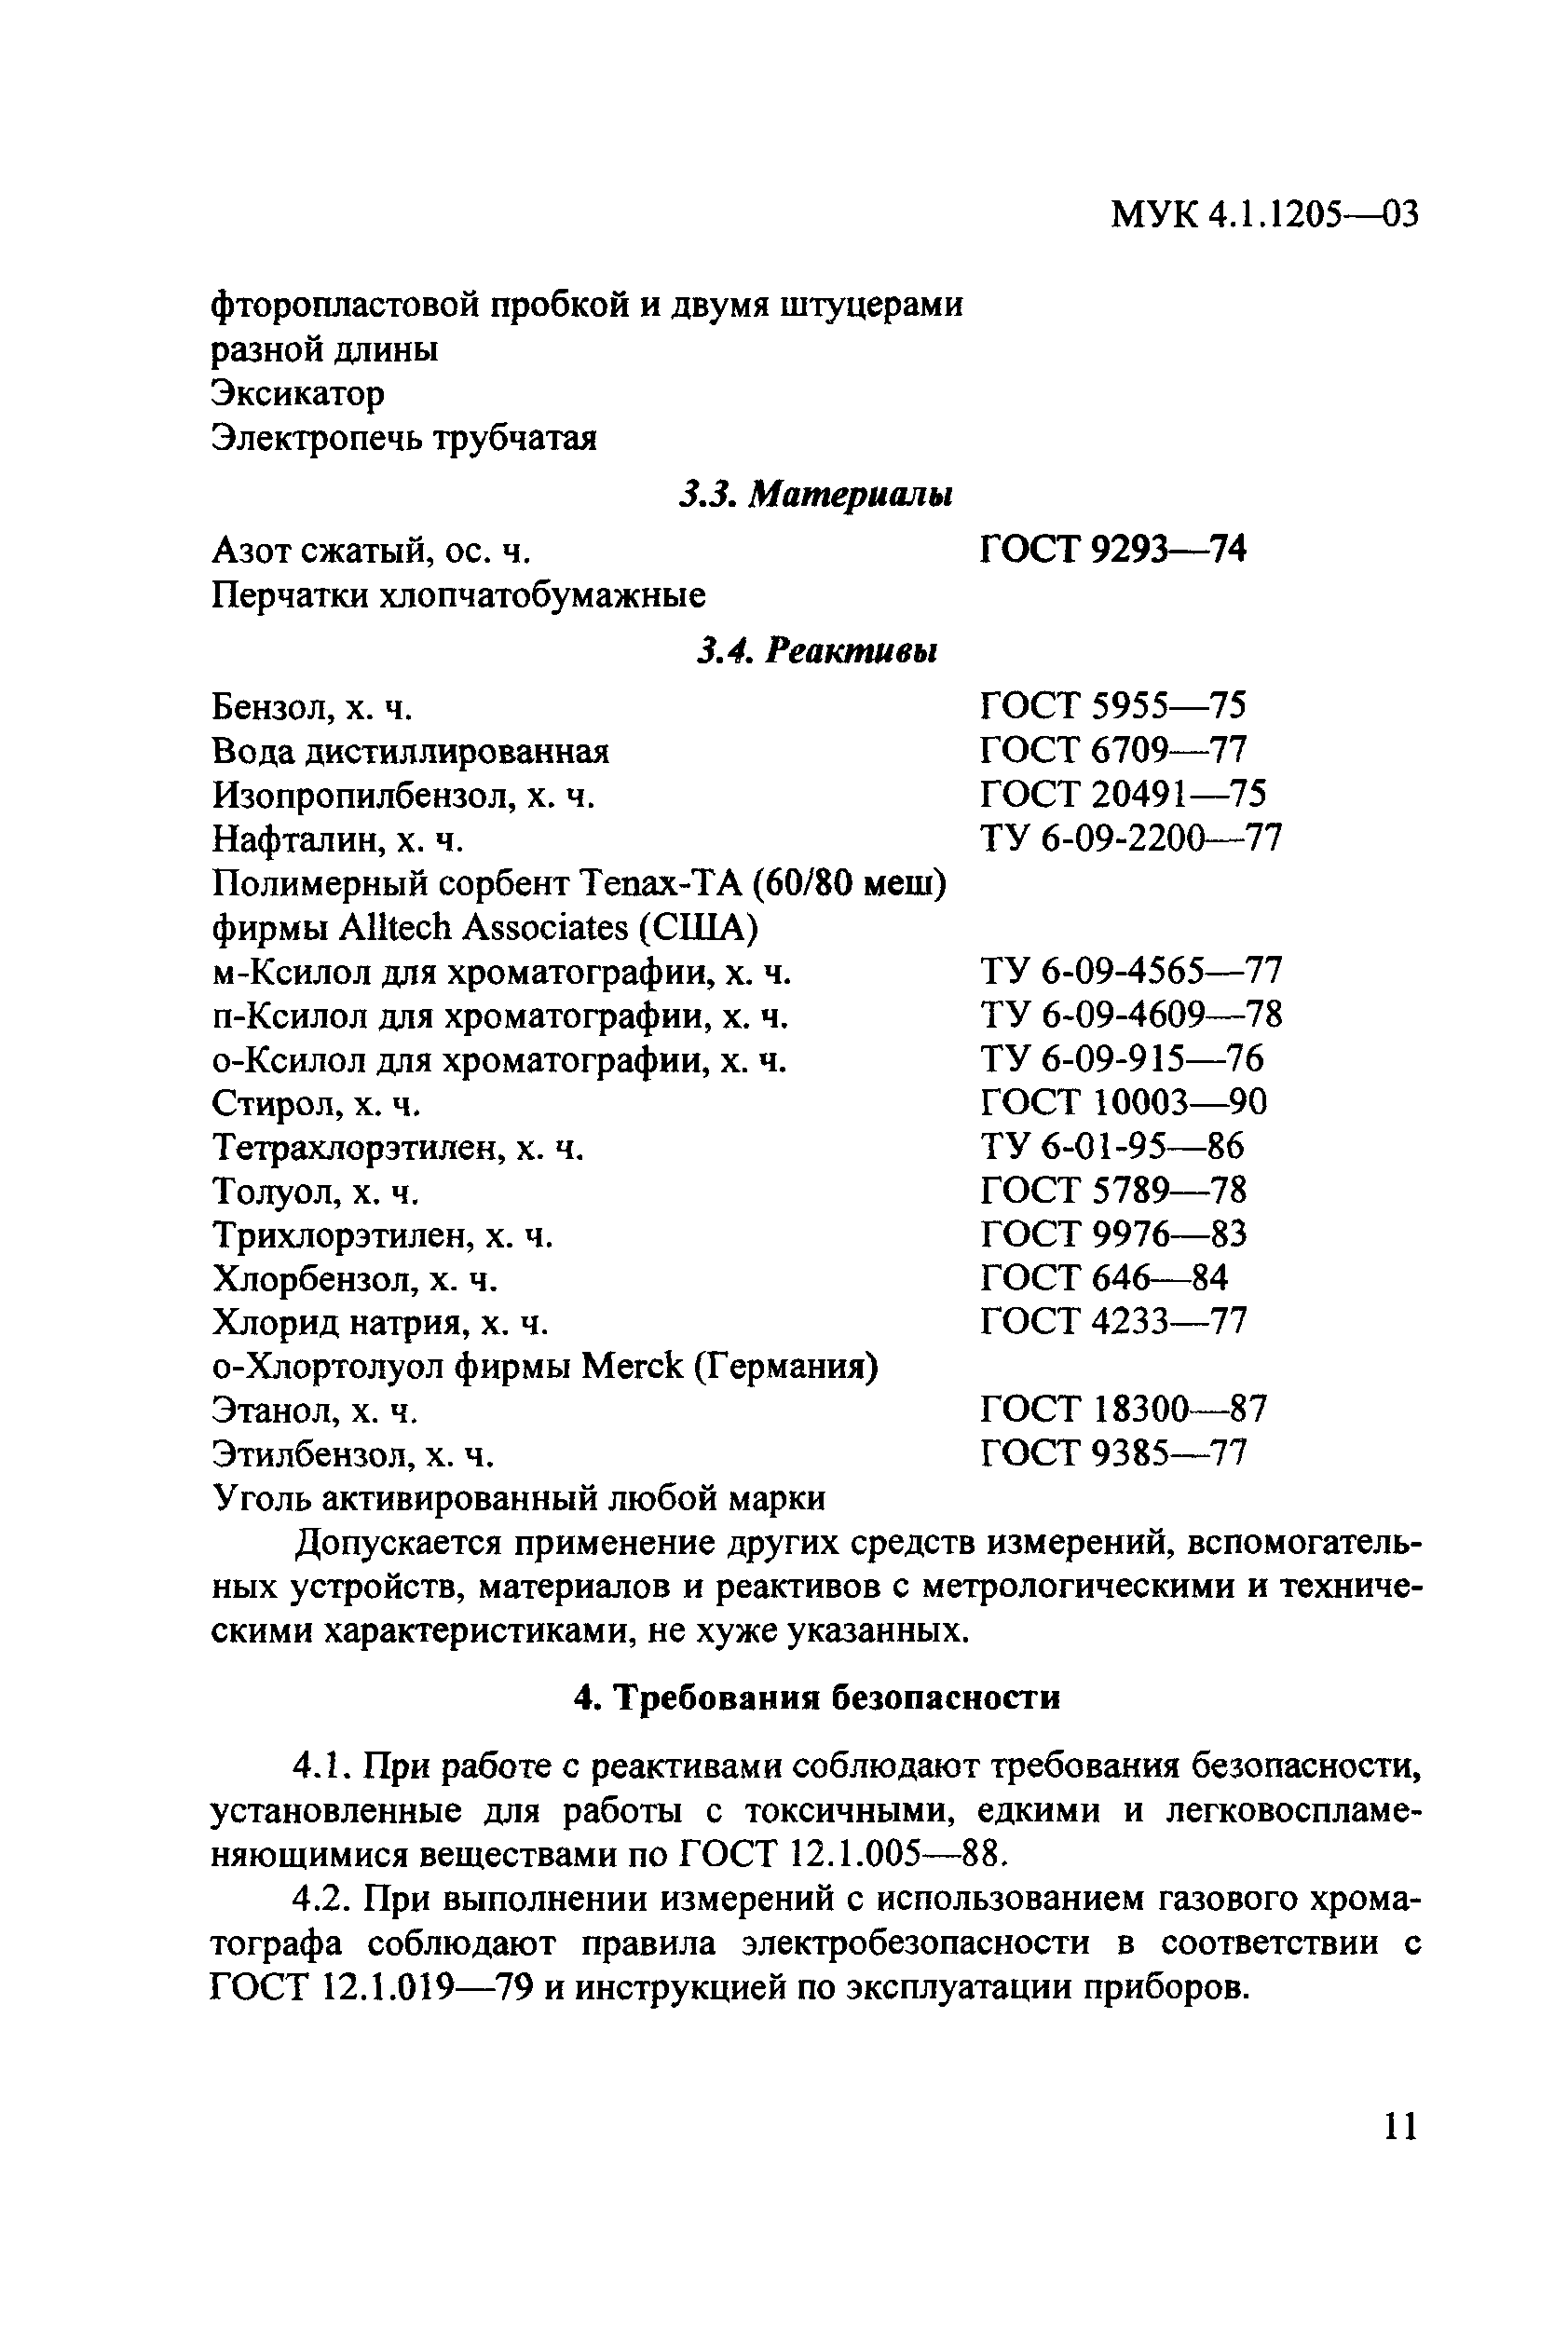 МУК 4.1.1205-03